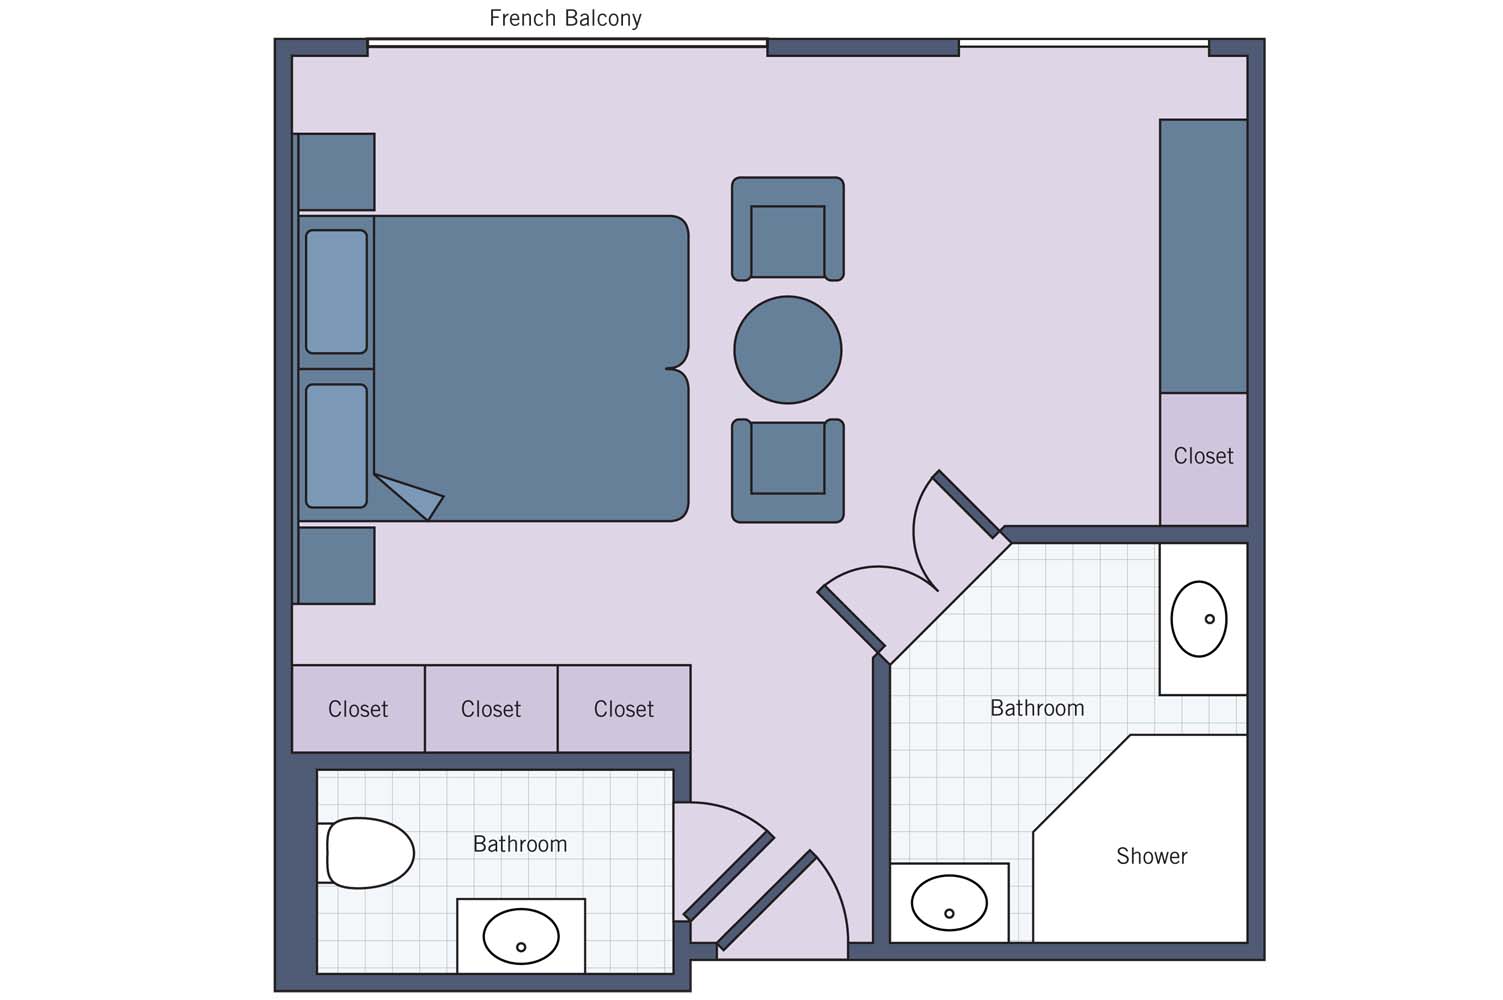 UNI River Royale Suite floor plan